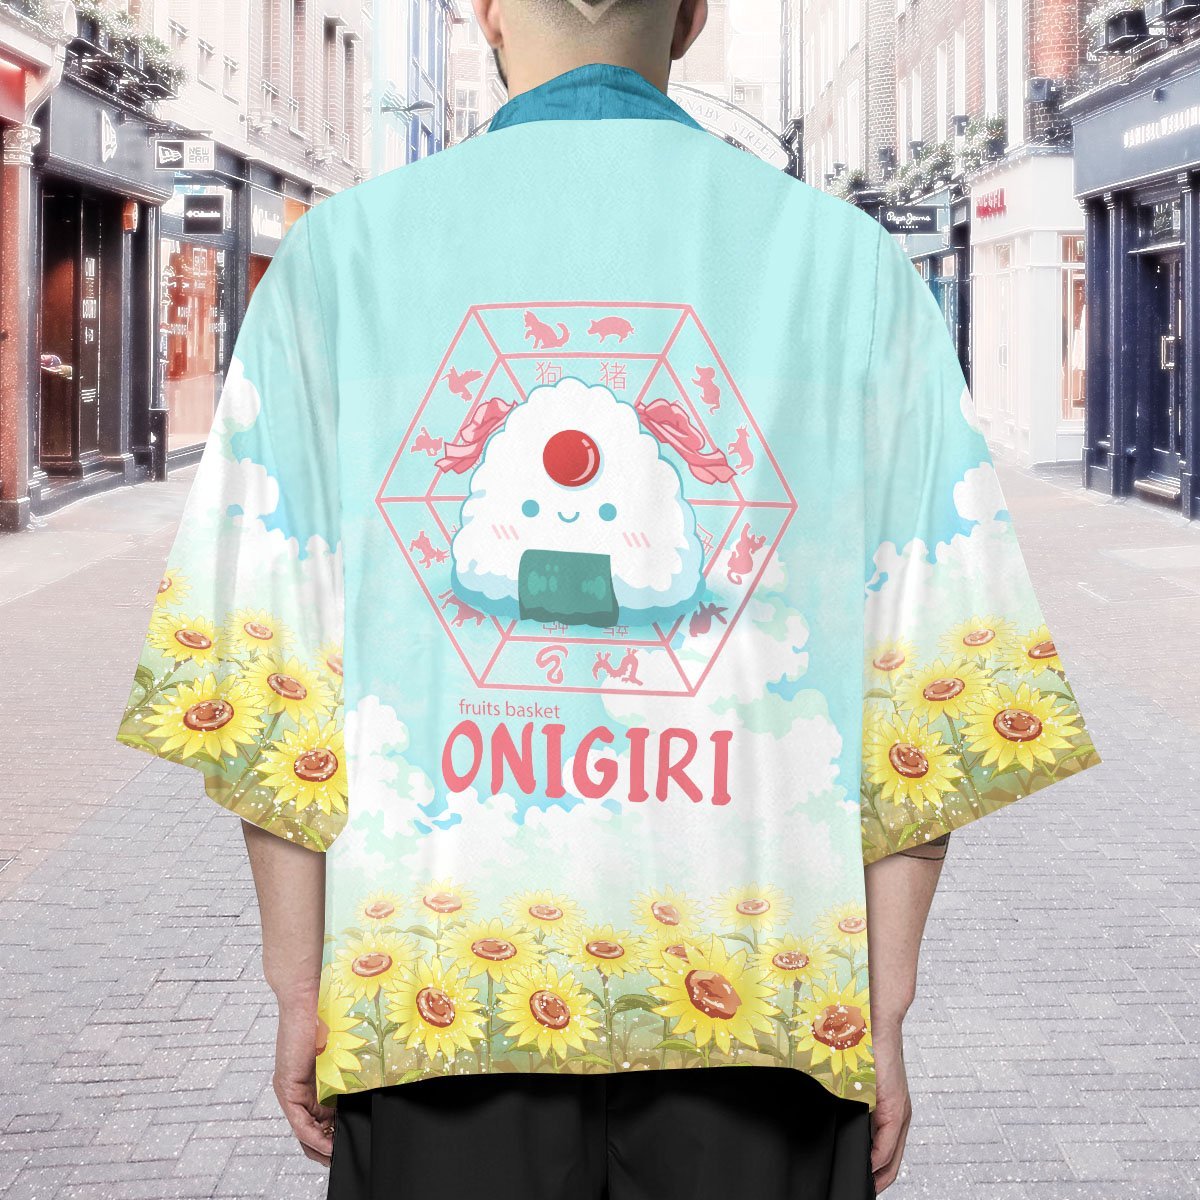 tohru the onigiri kimono 653375 - Otaku Treat